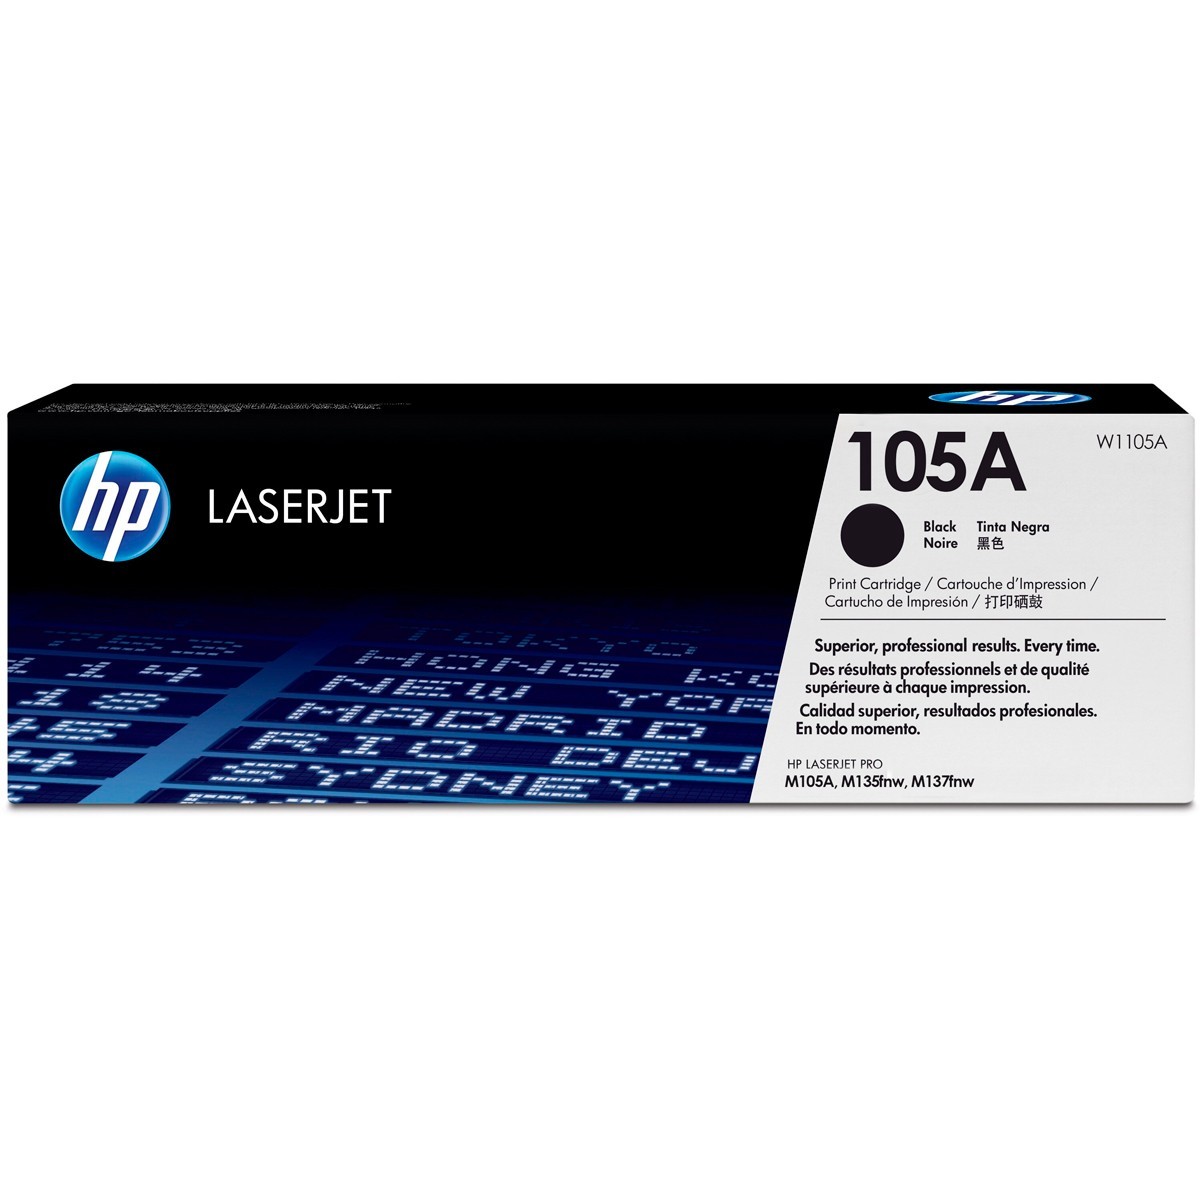 impresoras y scanners - TONER HP 105A - W1105A TOTALMENTE ORIGINAL EN ESPECIAL  1